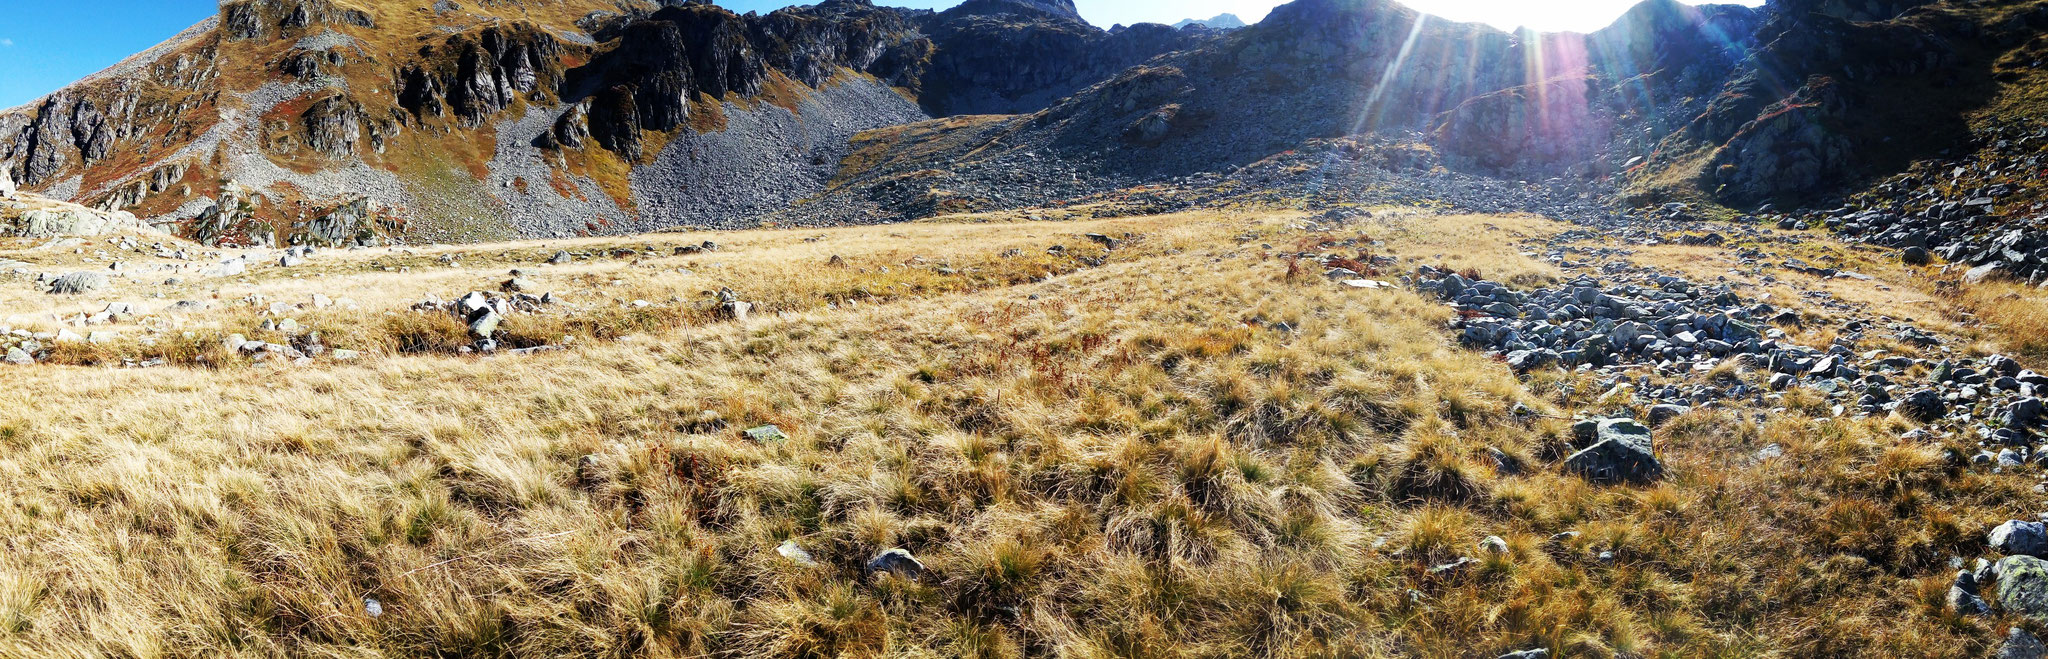 La steppe De l'Oural aux pelouses gorgées de verre...